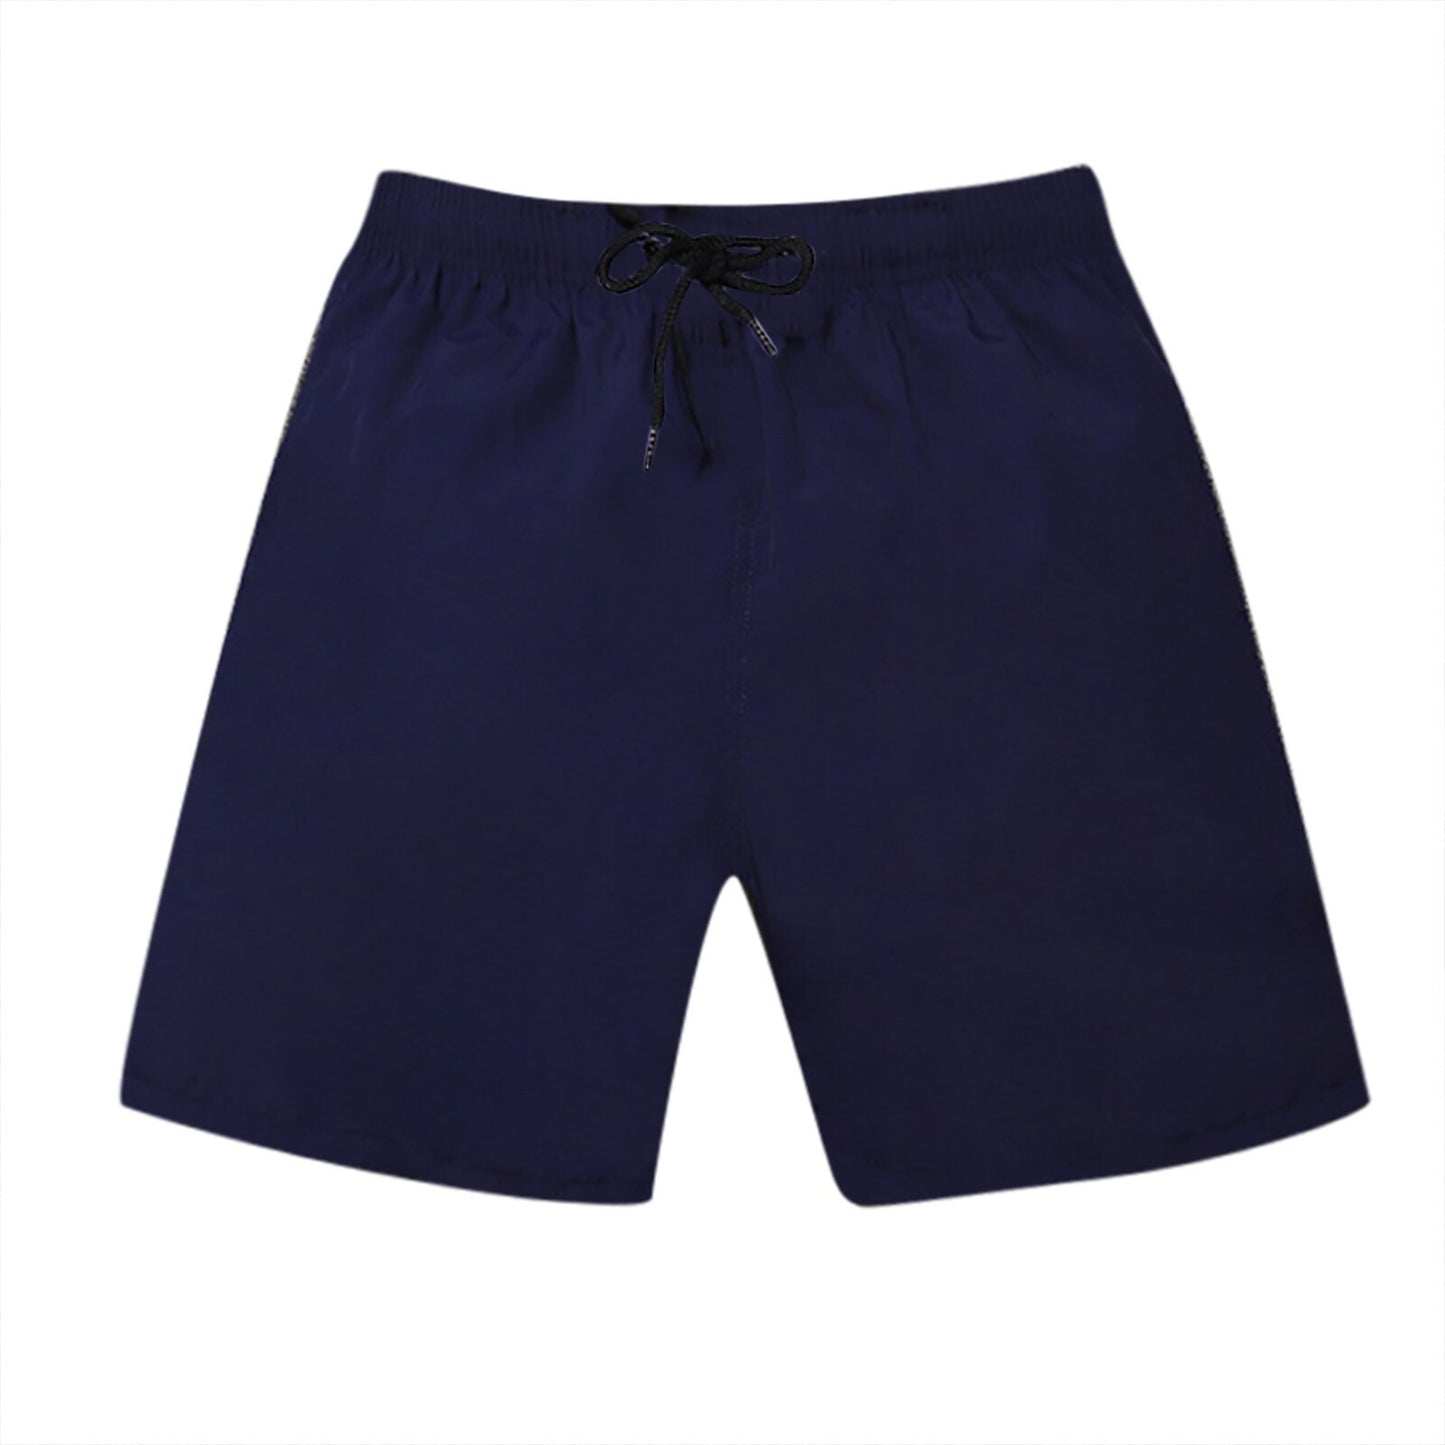 Men's Stretch Swim Trunks Quick Dry Beach Shorts Wmesh Lining מכנסיים קצרים Kurze Hosen Herren Chort Homme Essentials Shorts